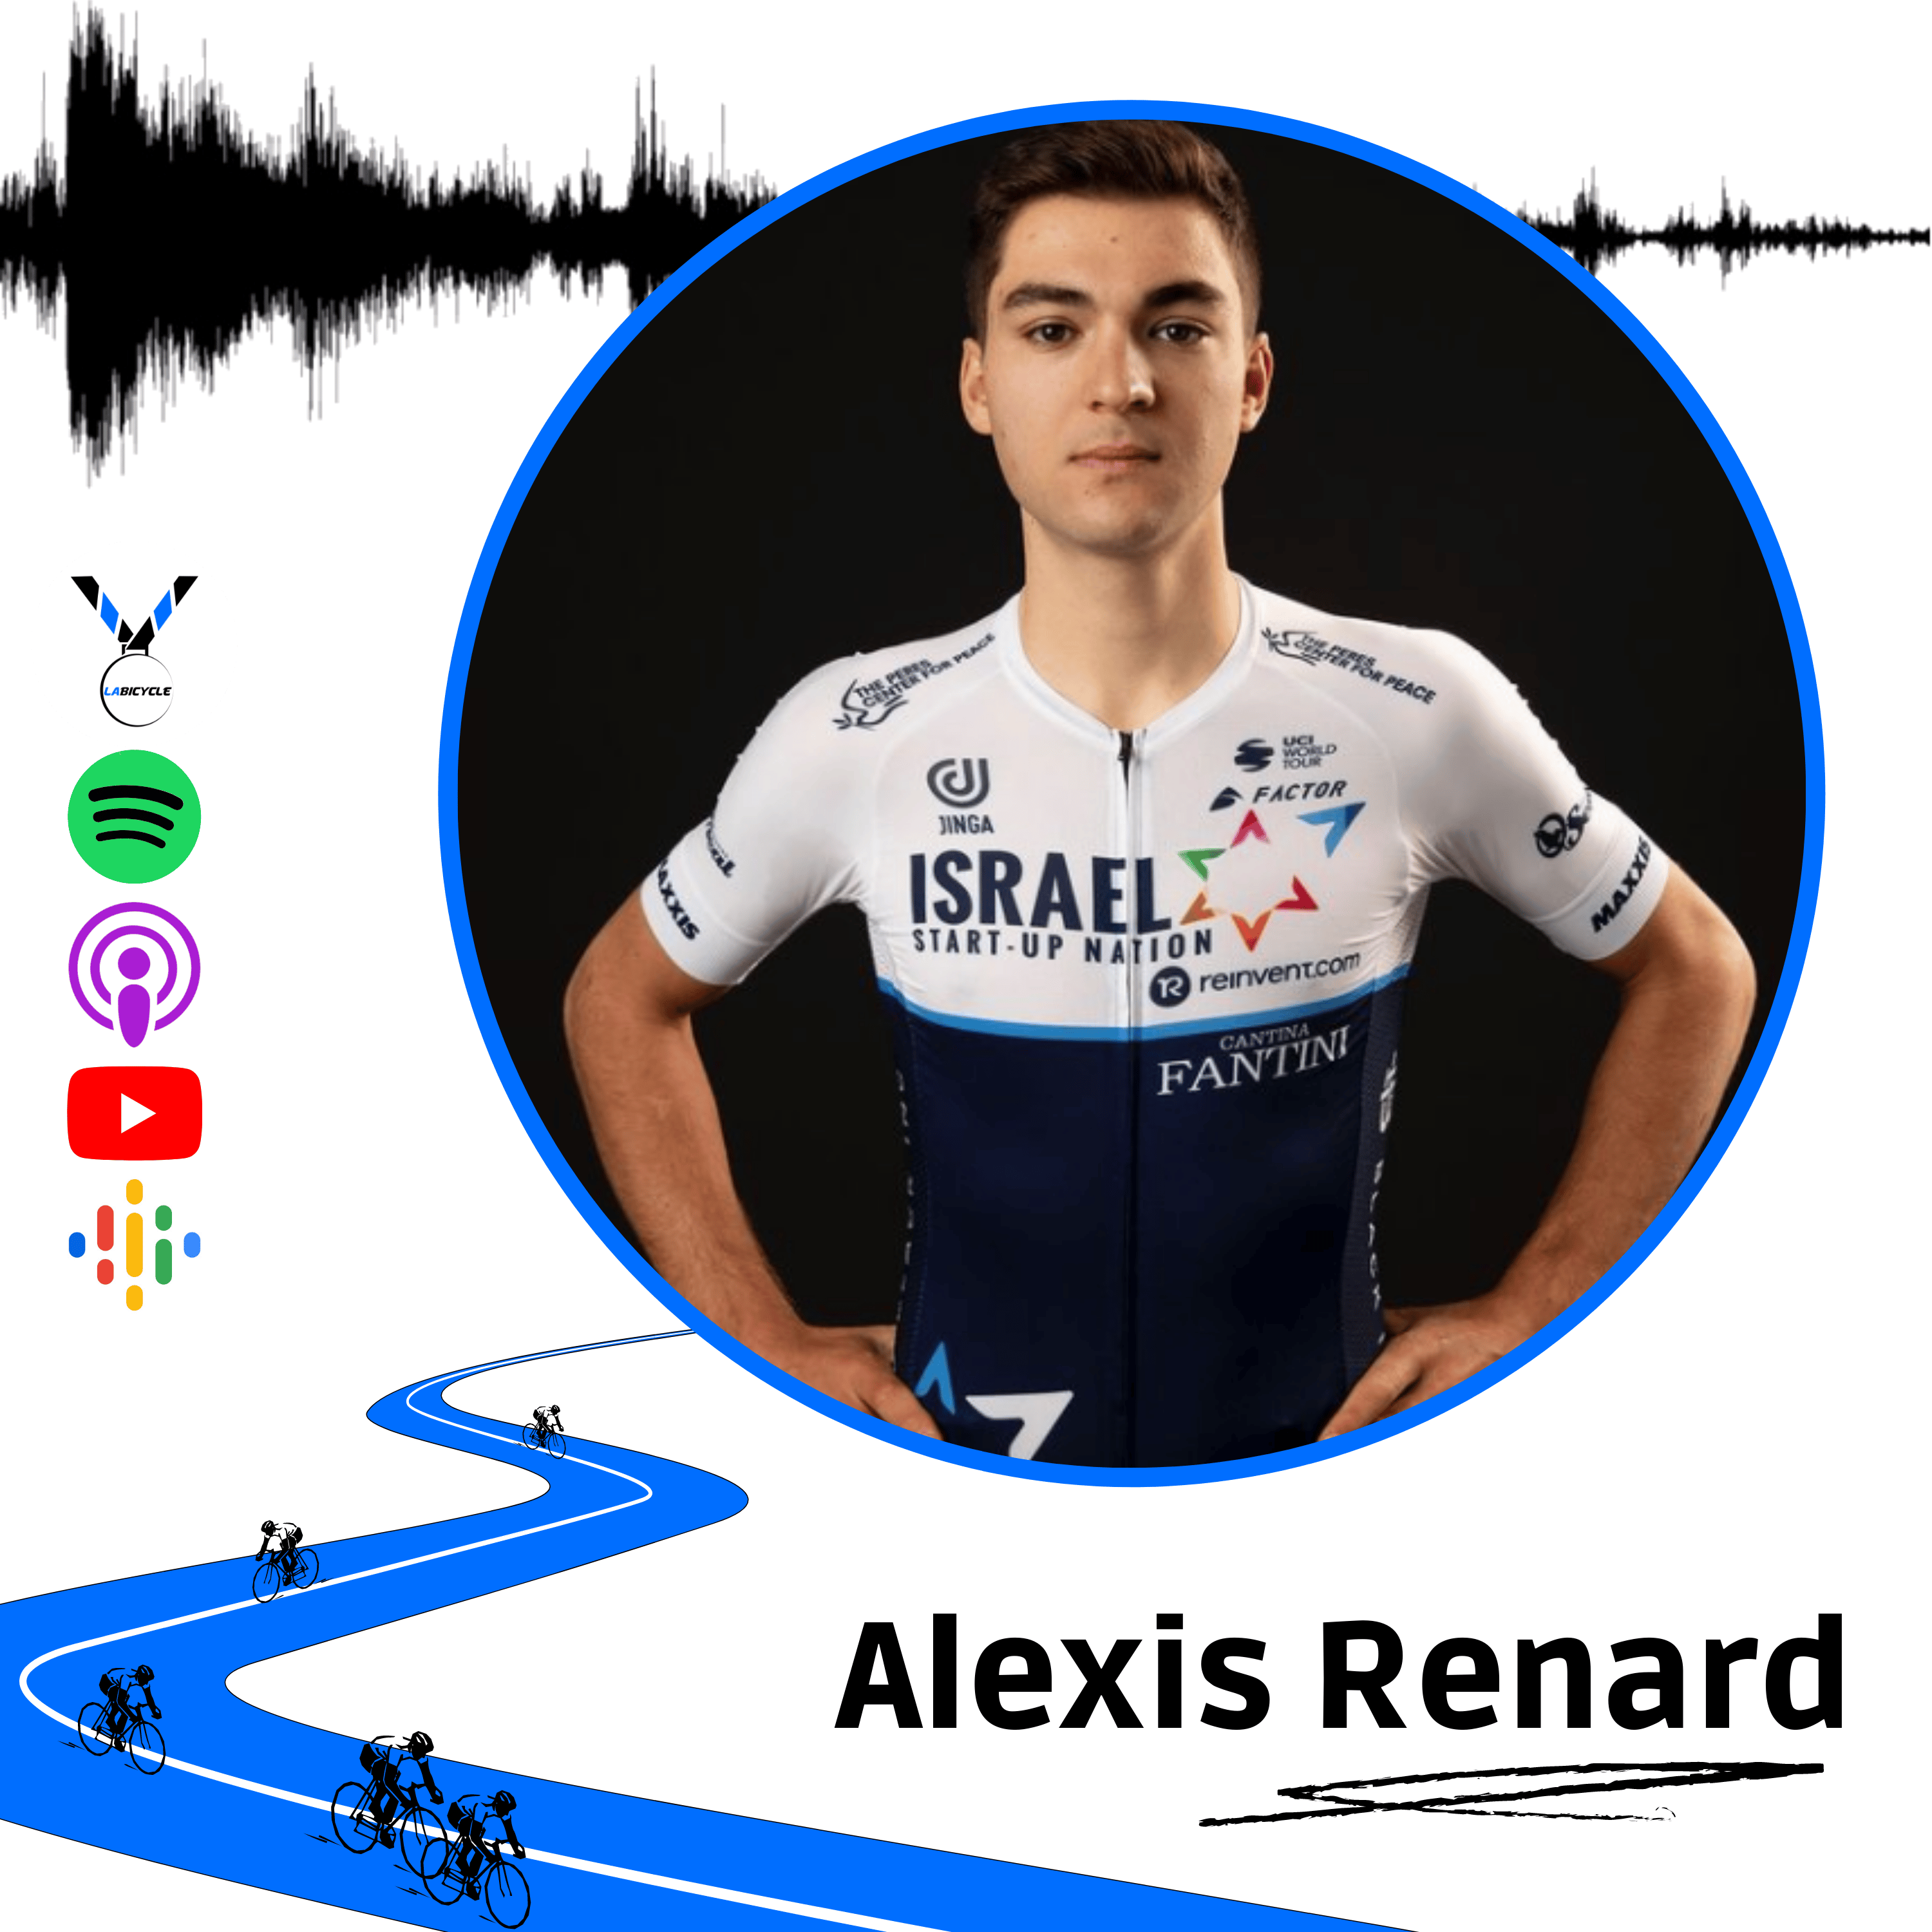 Alexis renard cycliste